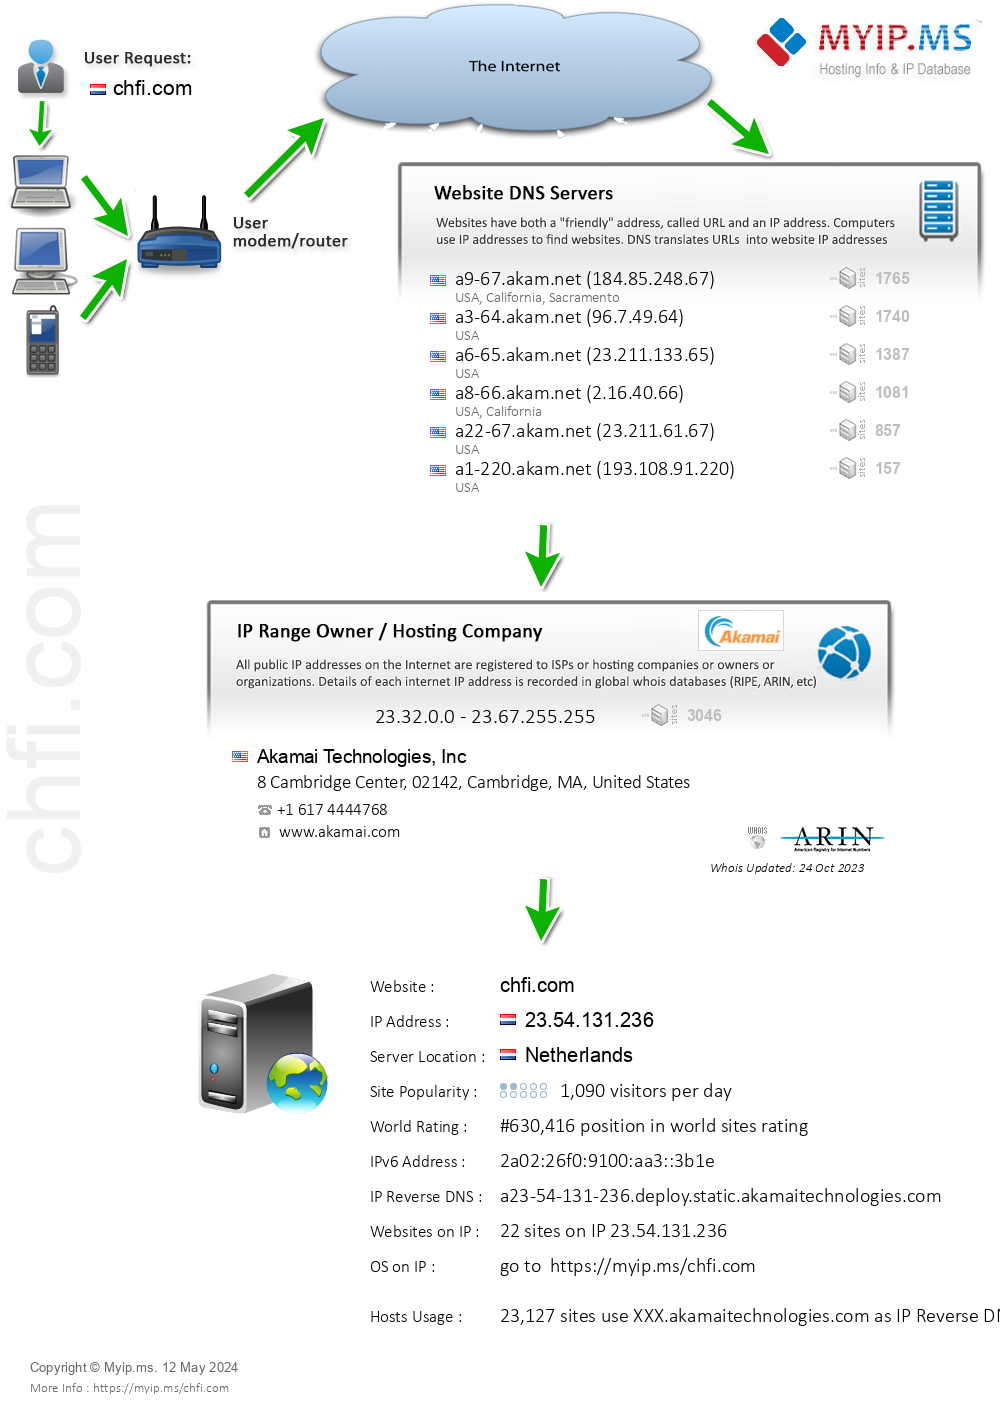 Chfi.com - Website Hosting Visual IP Diagram